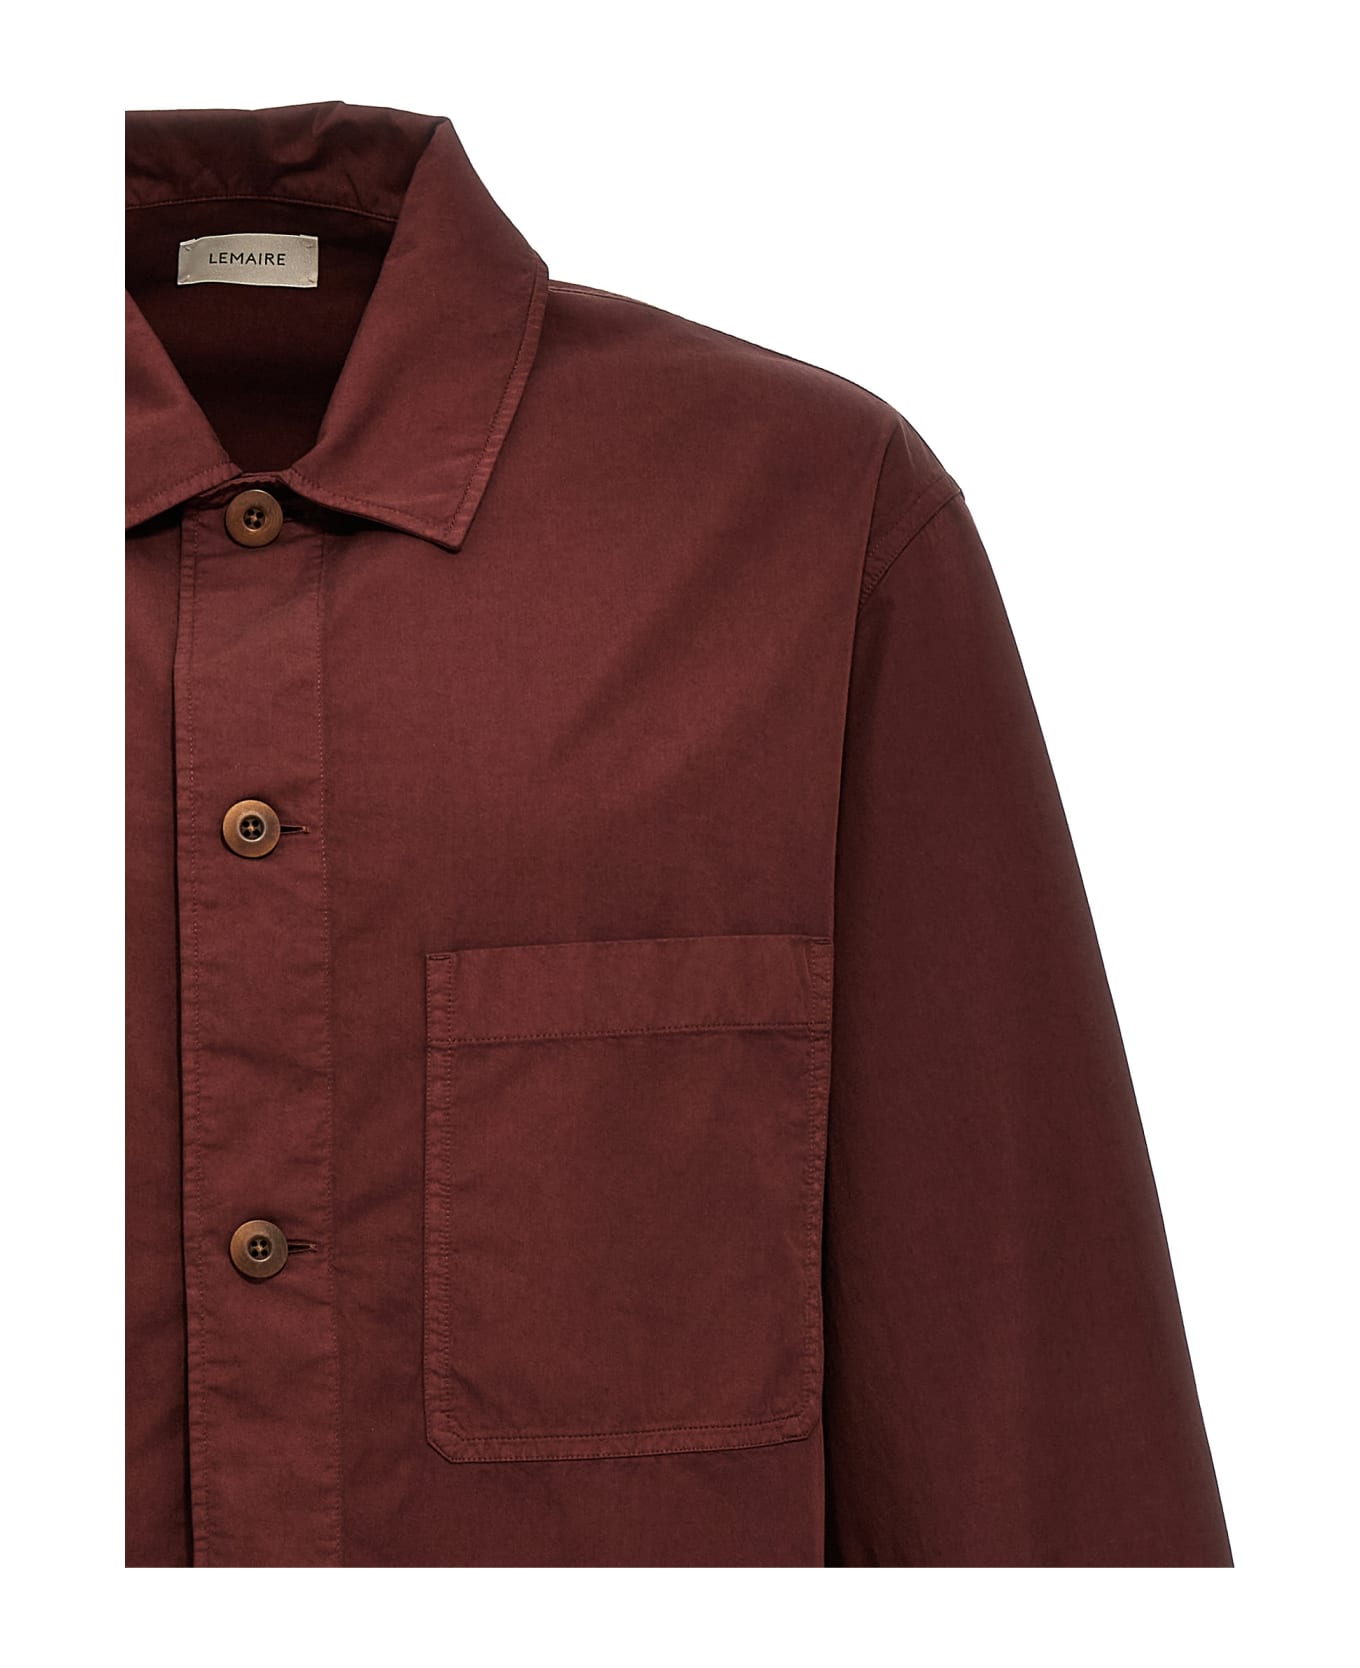 Lemaire 'ls Pyjama' Shirt - Brown